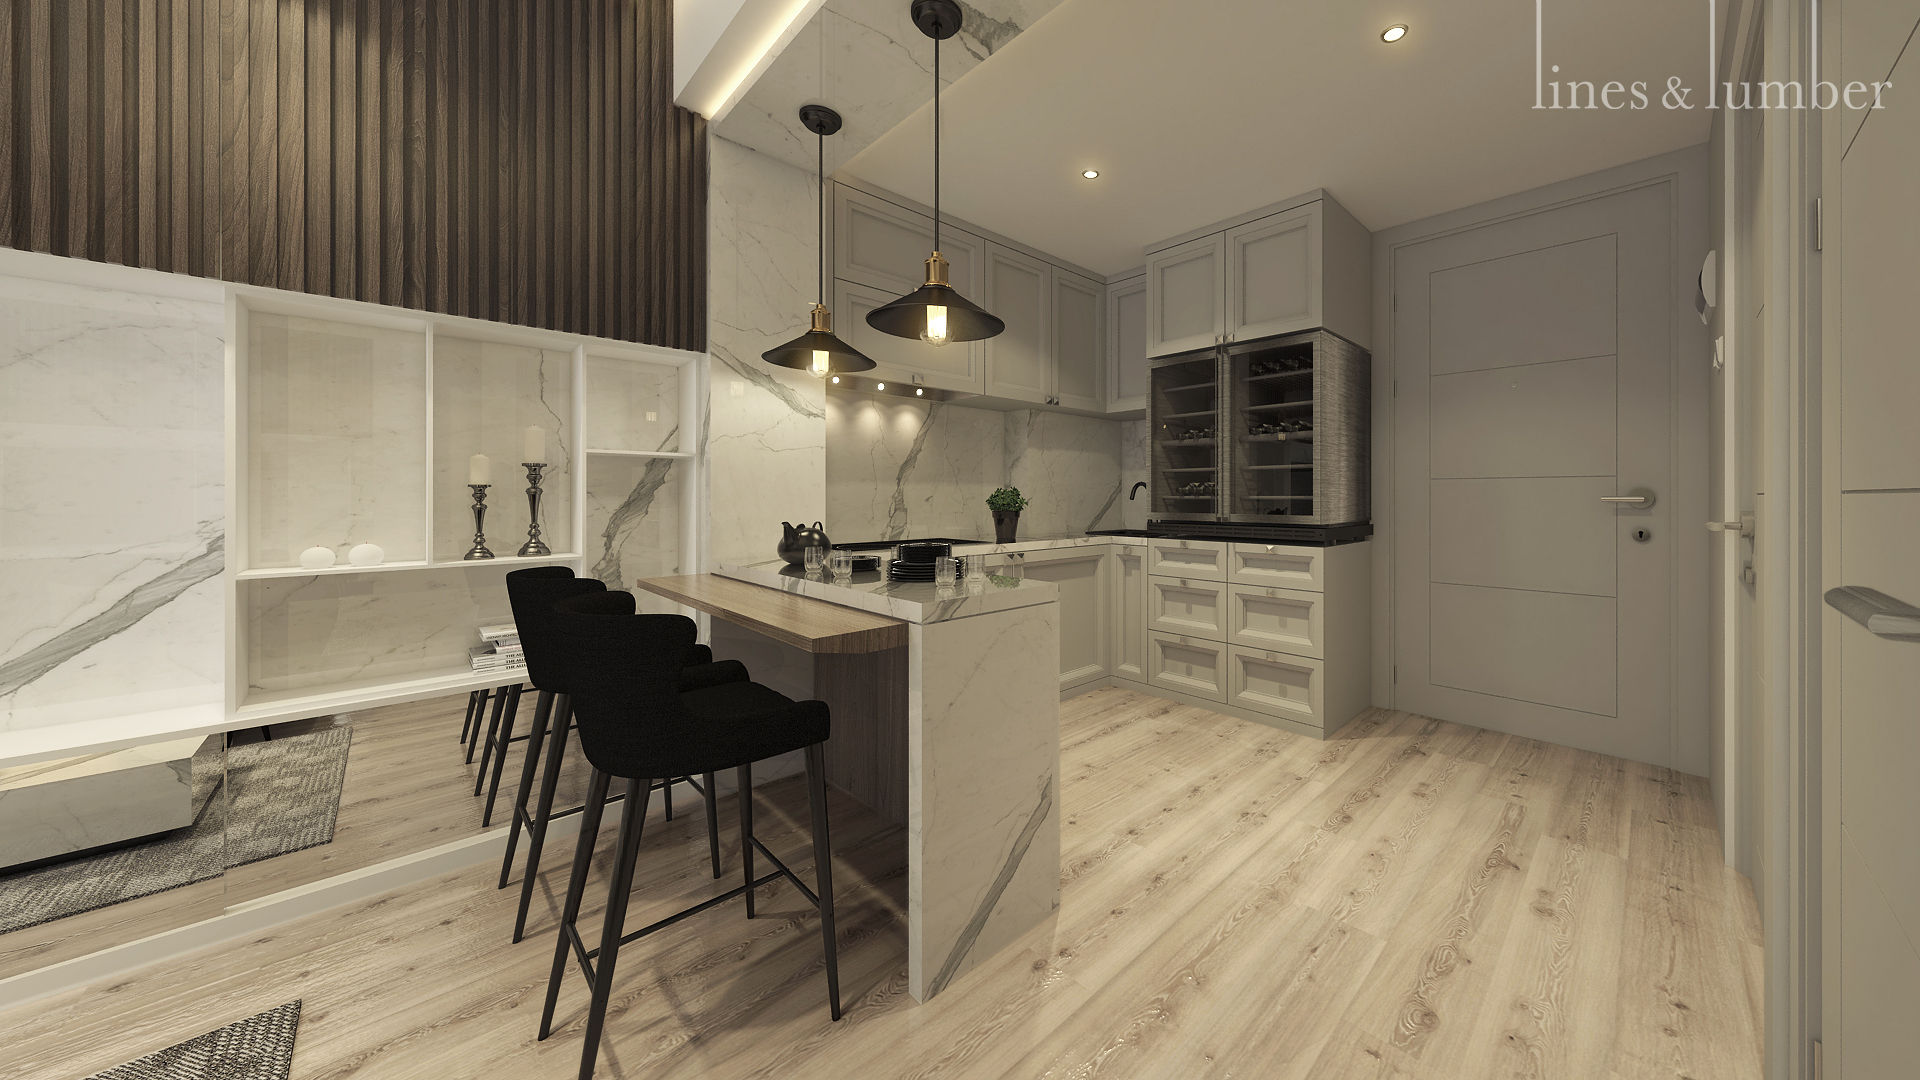 Studio Apartment, Sandalwood Springhill , Lines & Lumber Lines & Lumber Nhà bếp phong cách mộc mạc